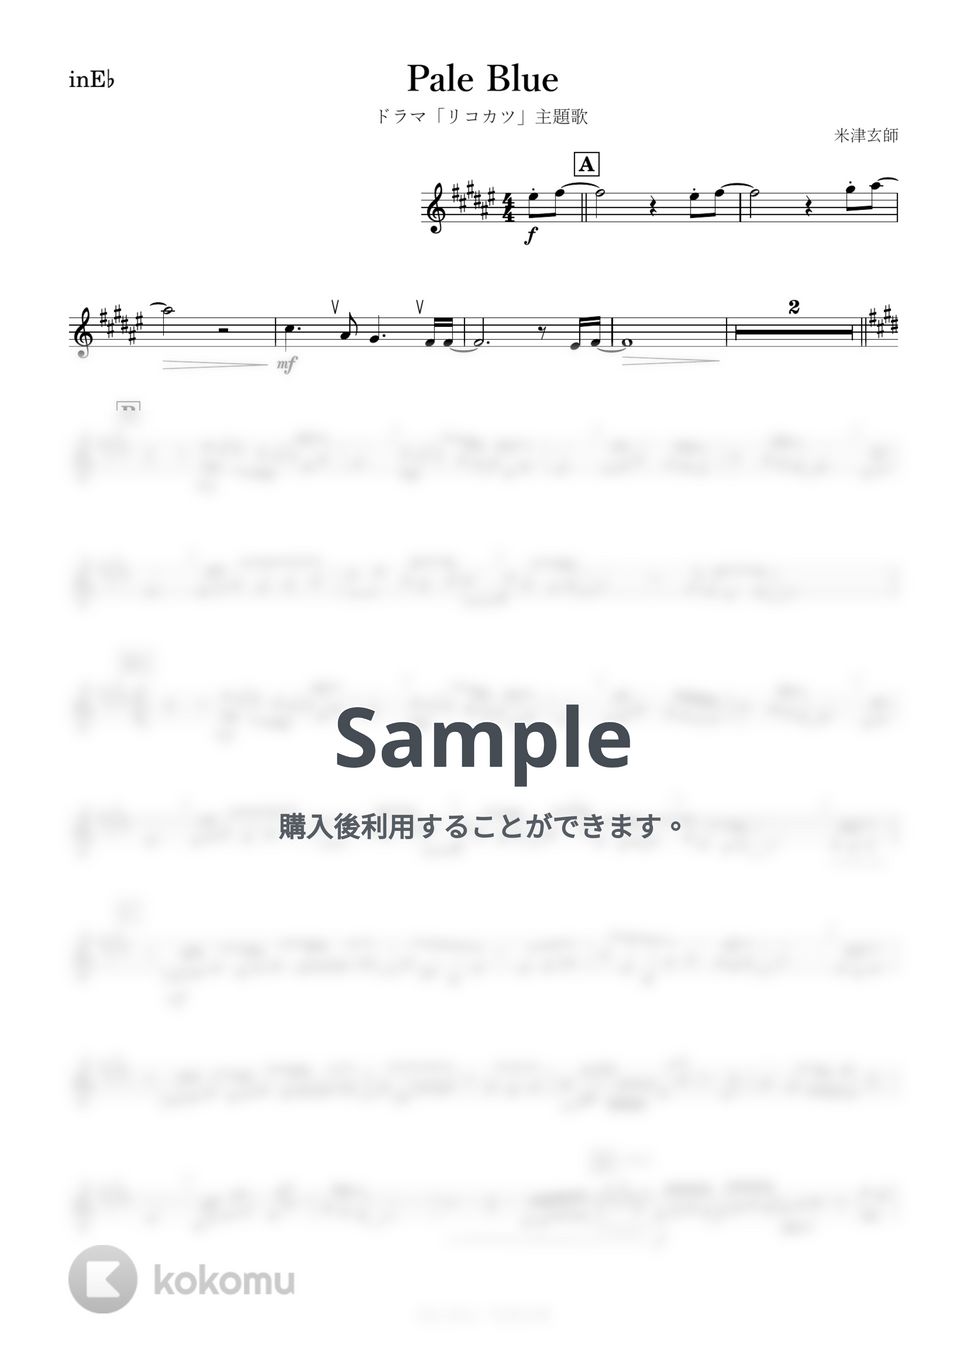 米津玄師 - Pale Blue (E♭) by kanamusic